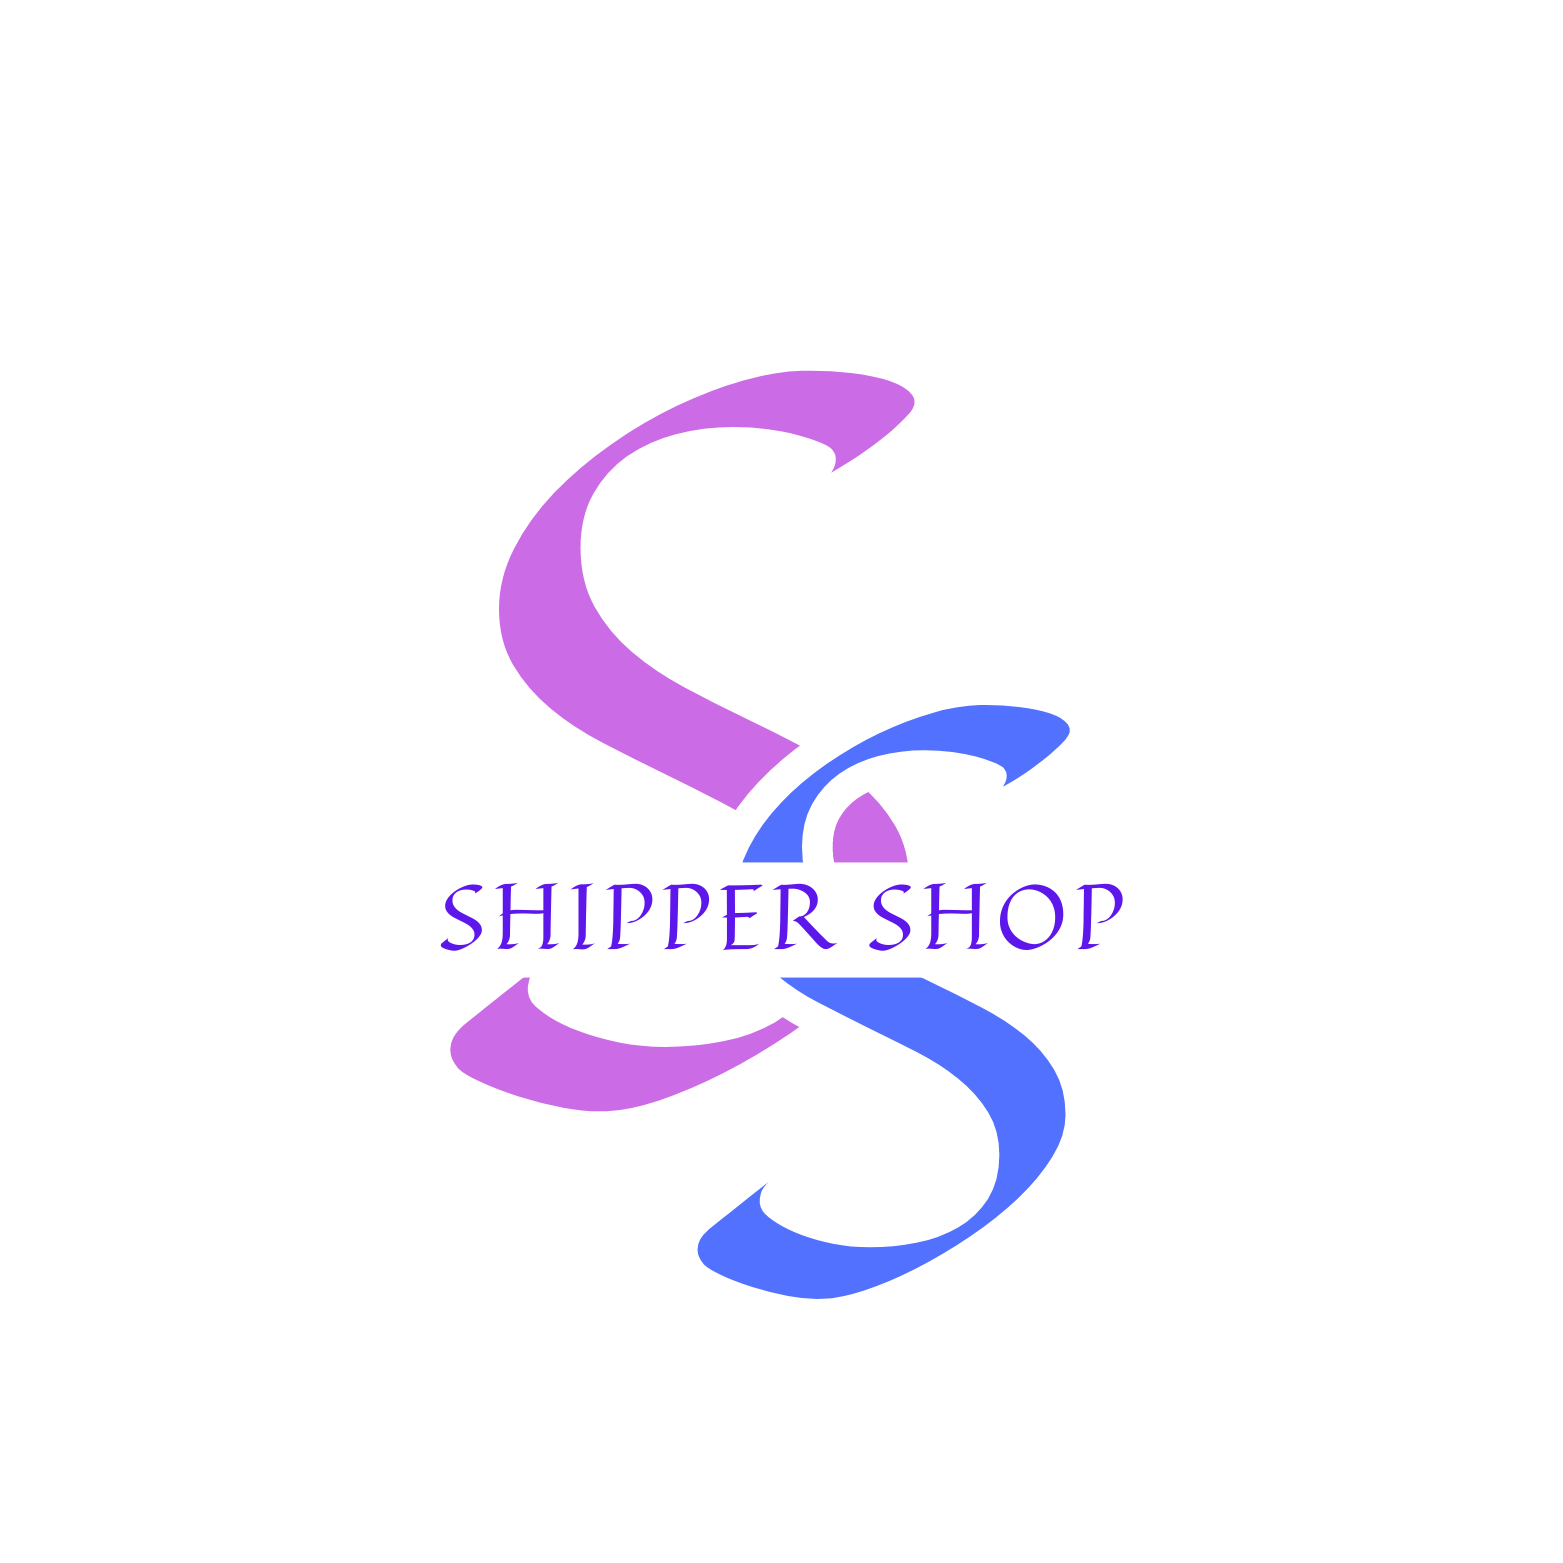 Shipper Shop